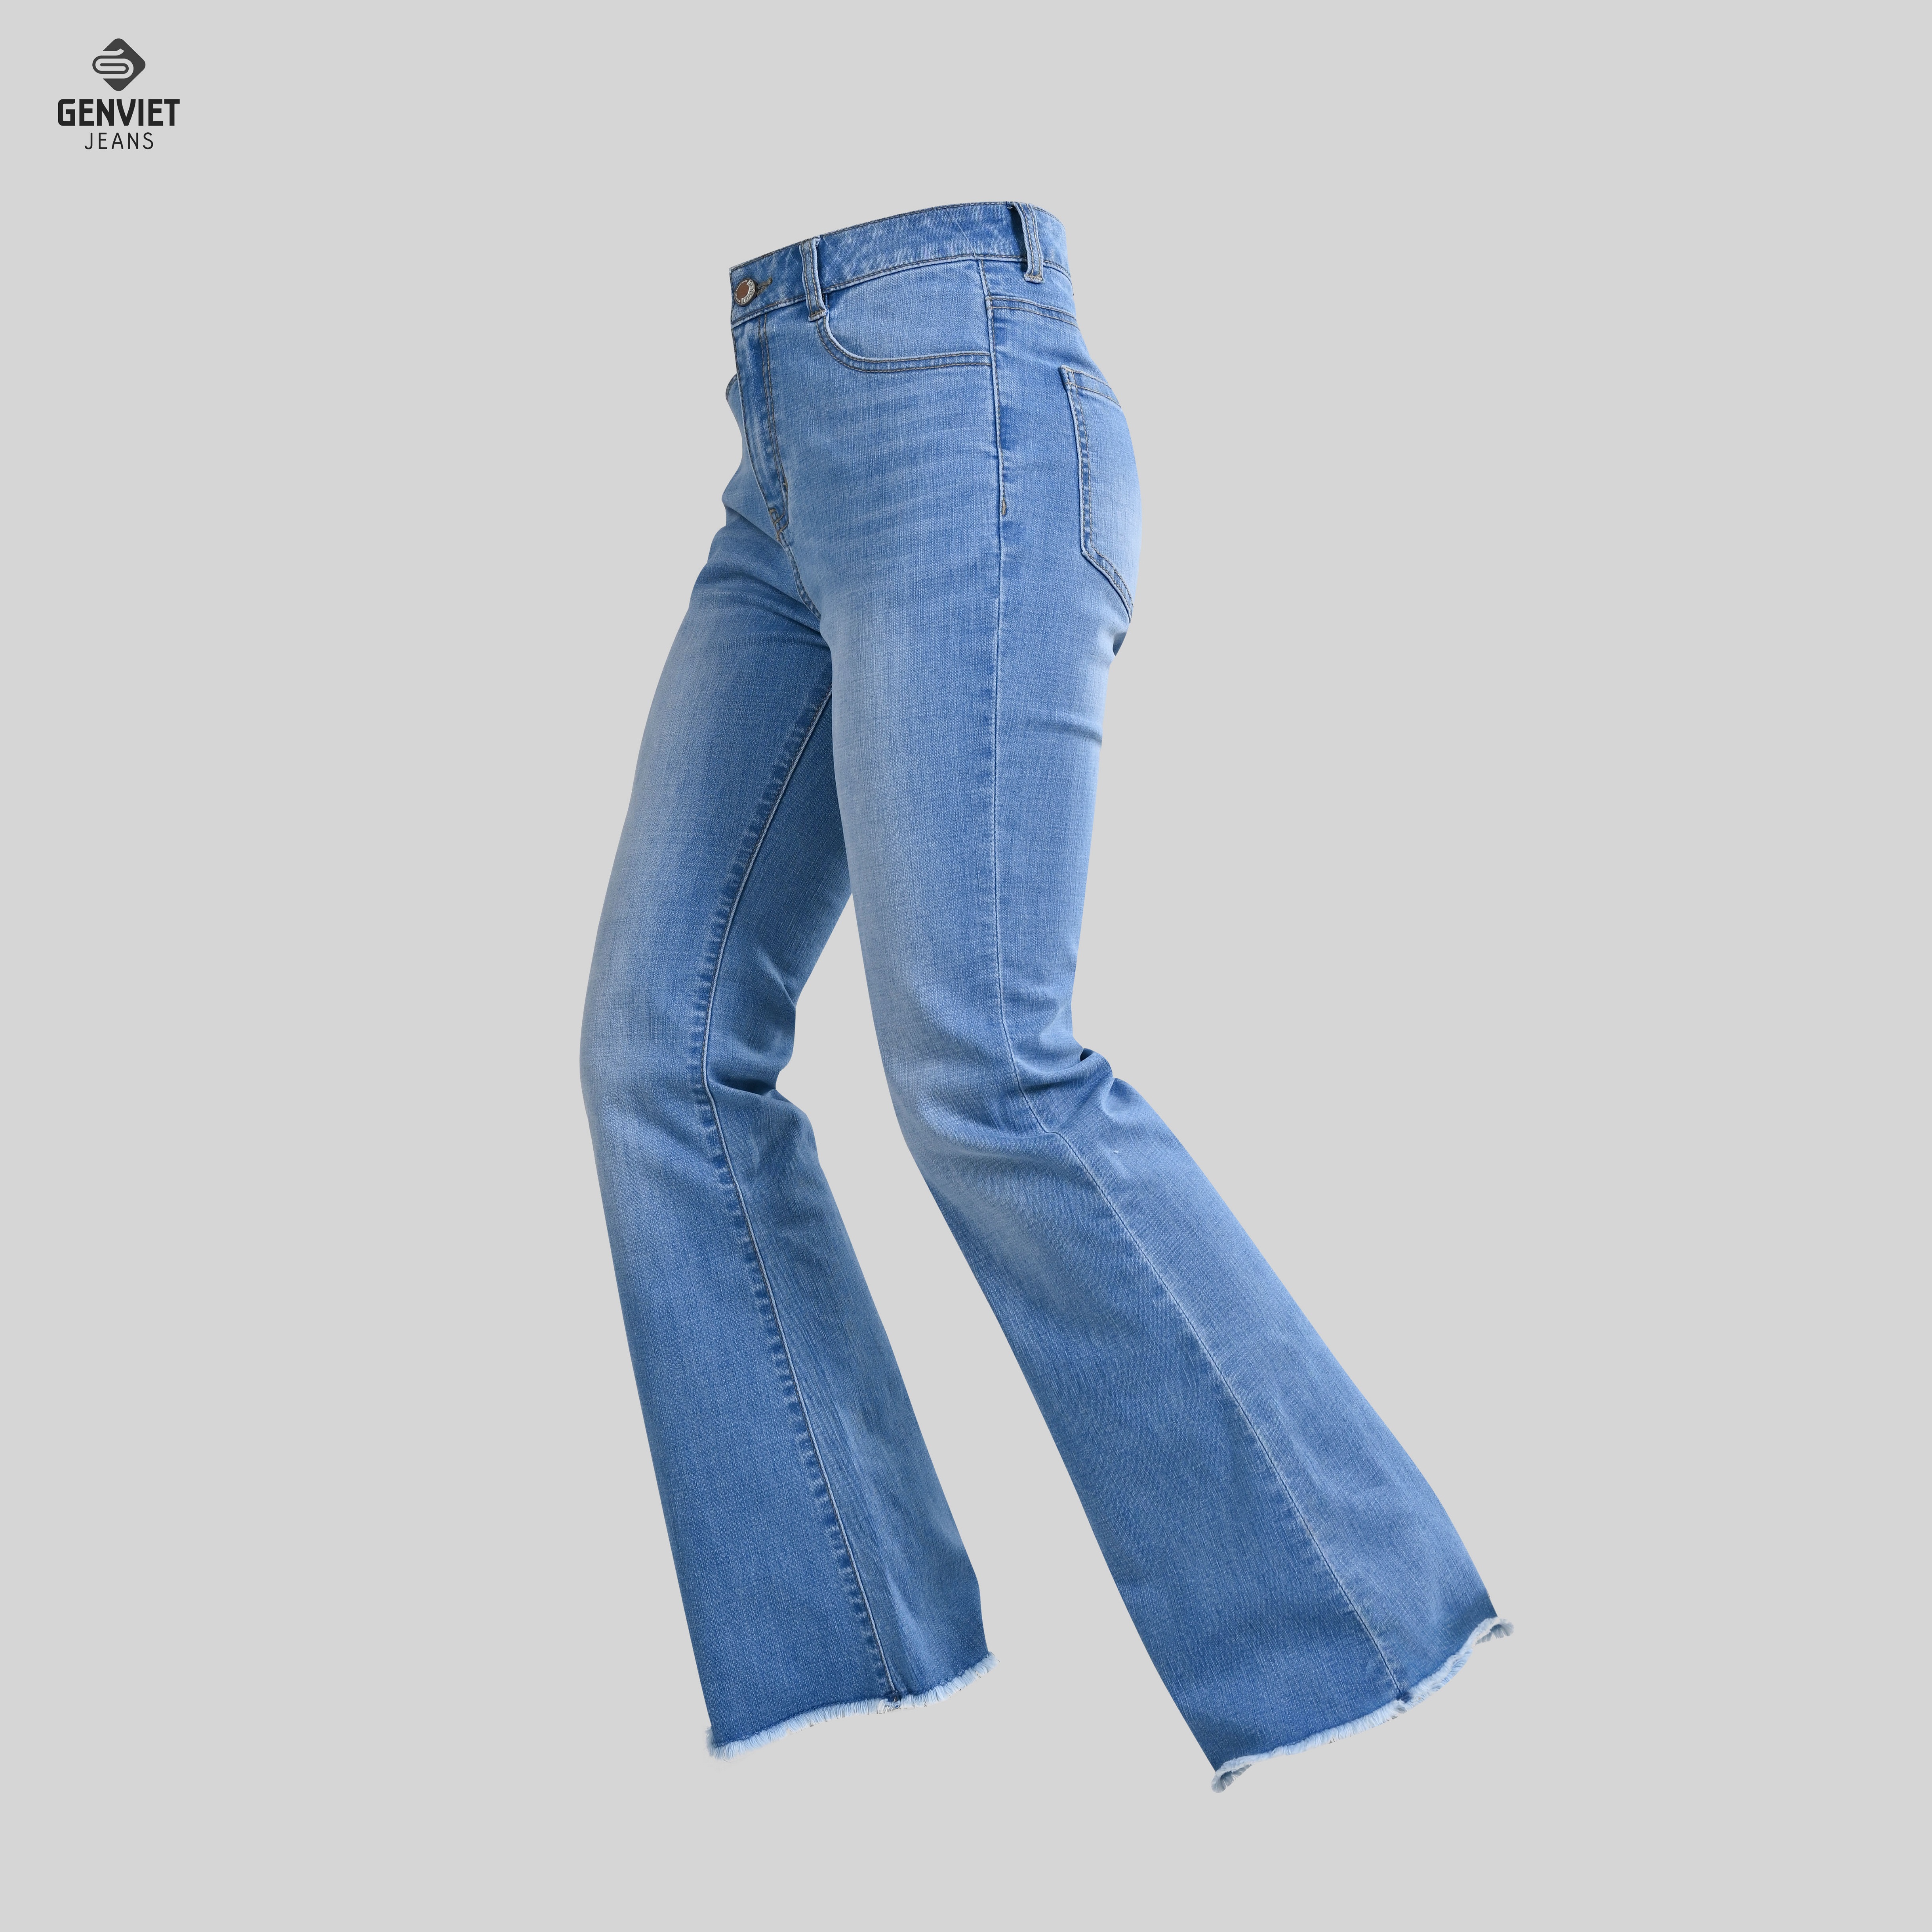 Quần Jeans Nữ Genviet Dáng Vẩy Loe Chất Bò Mềm Cao Cấp DQ110J8152